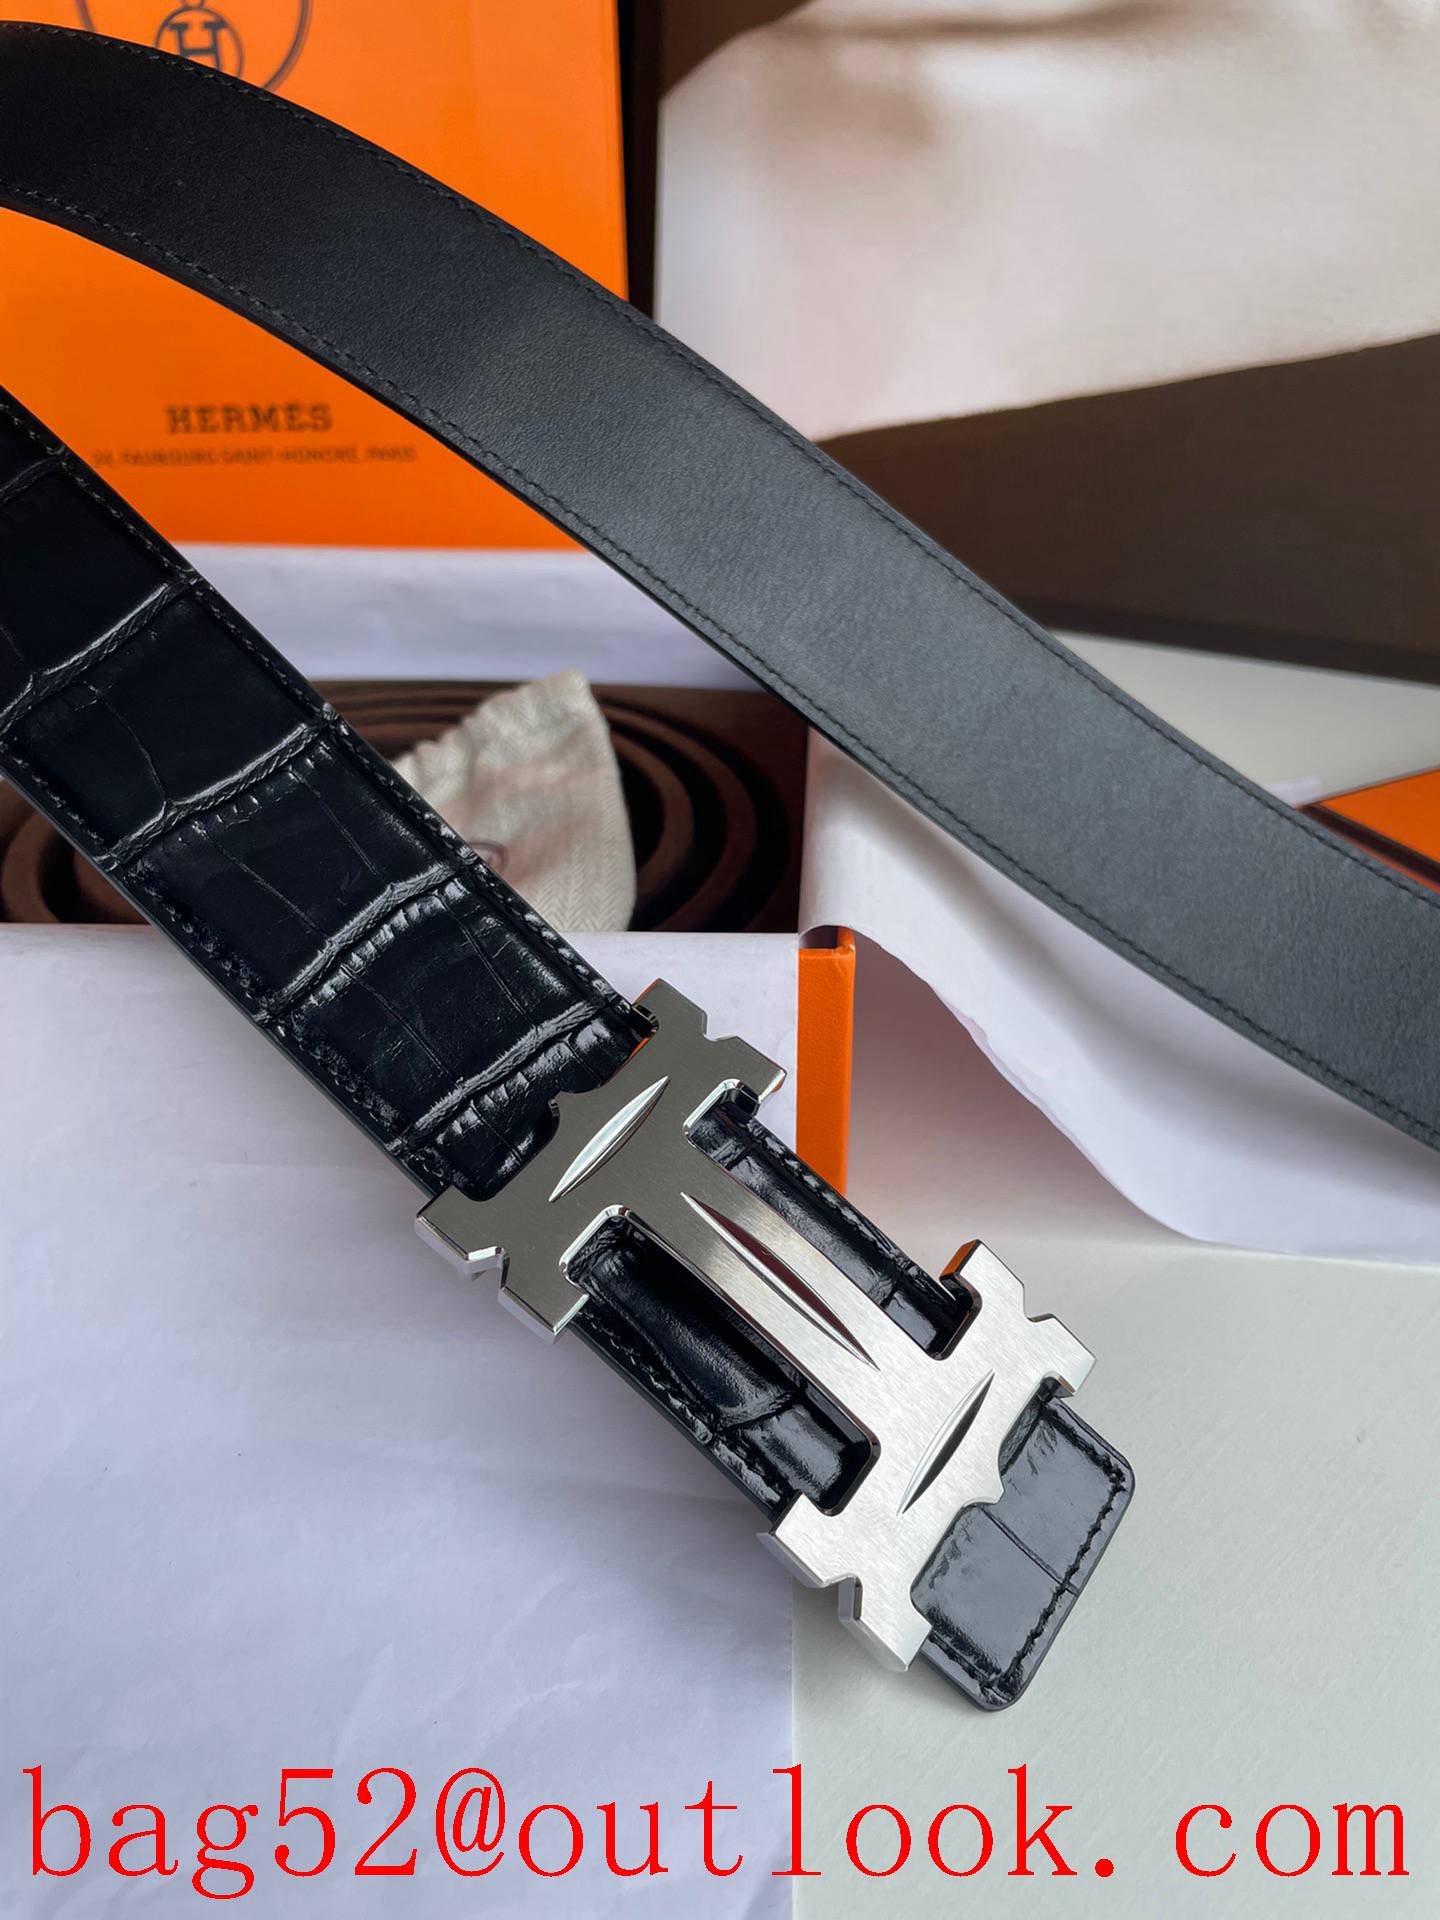 Hermes men's 3.8cm stainless steel material belt